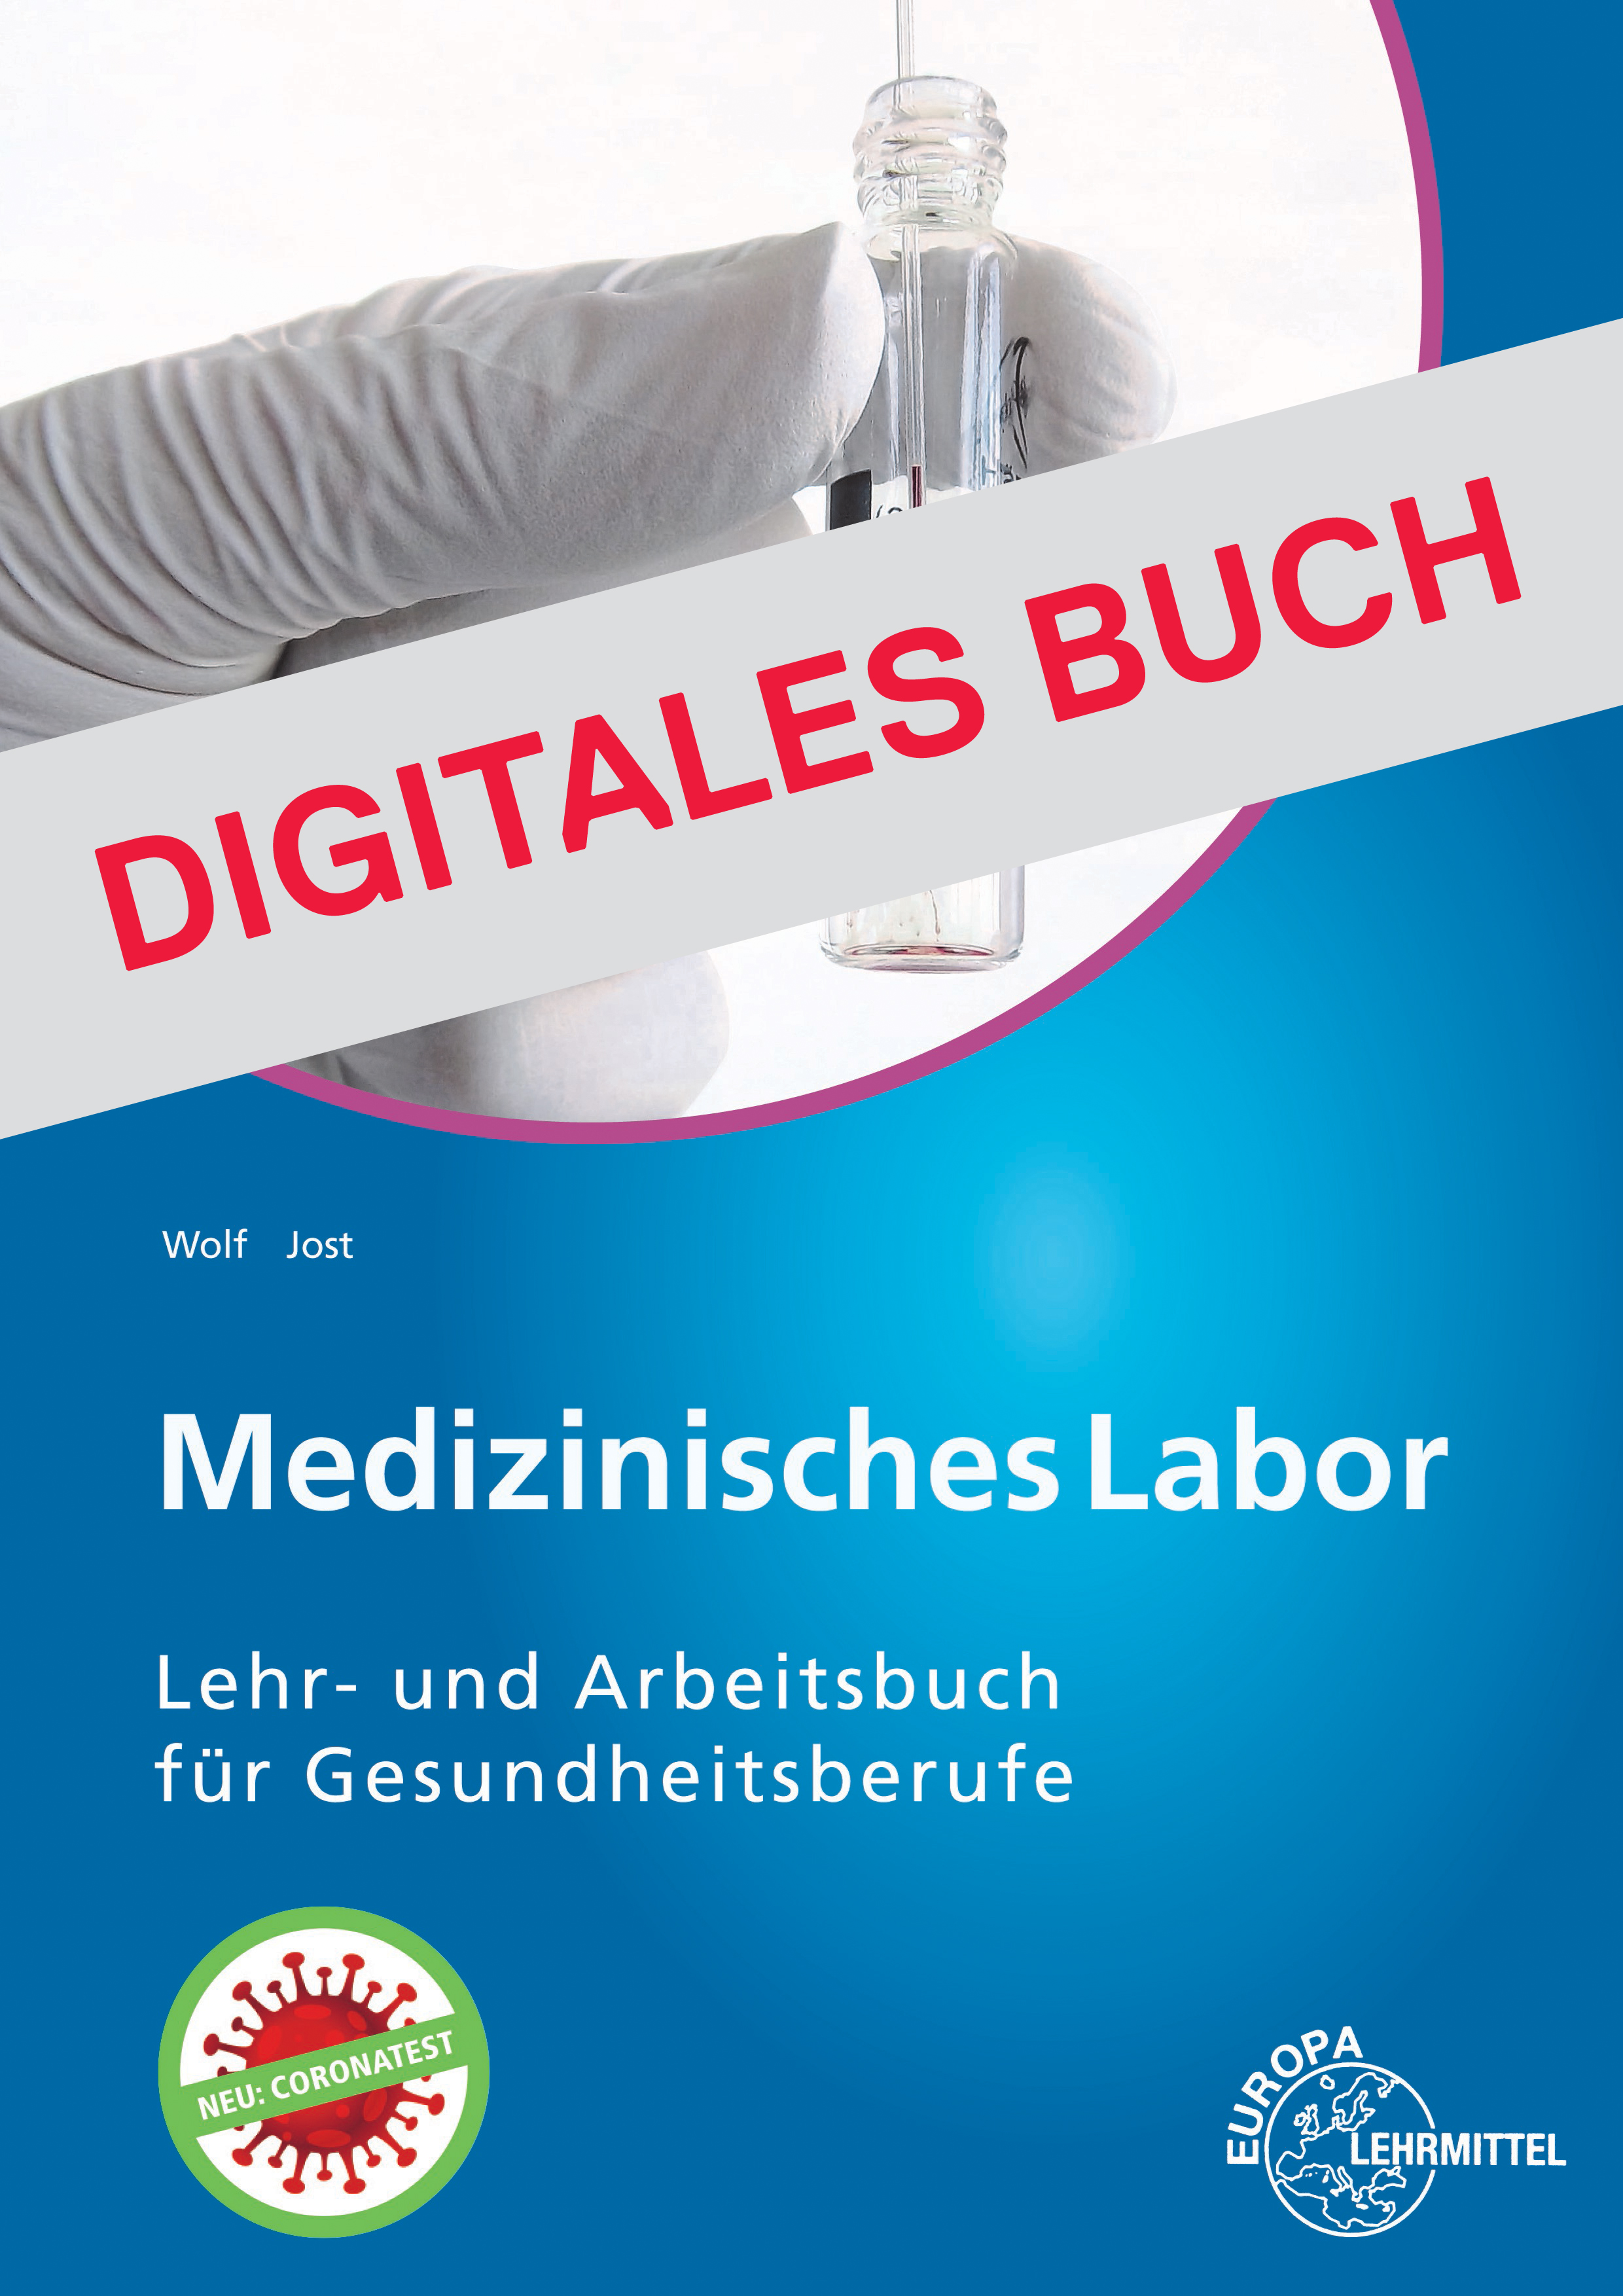 Medizinisches Labor - Digitales Buch